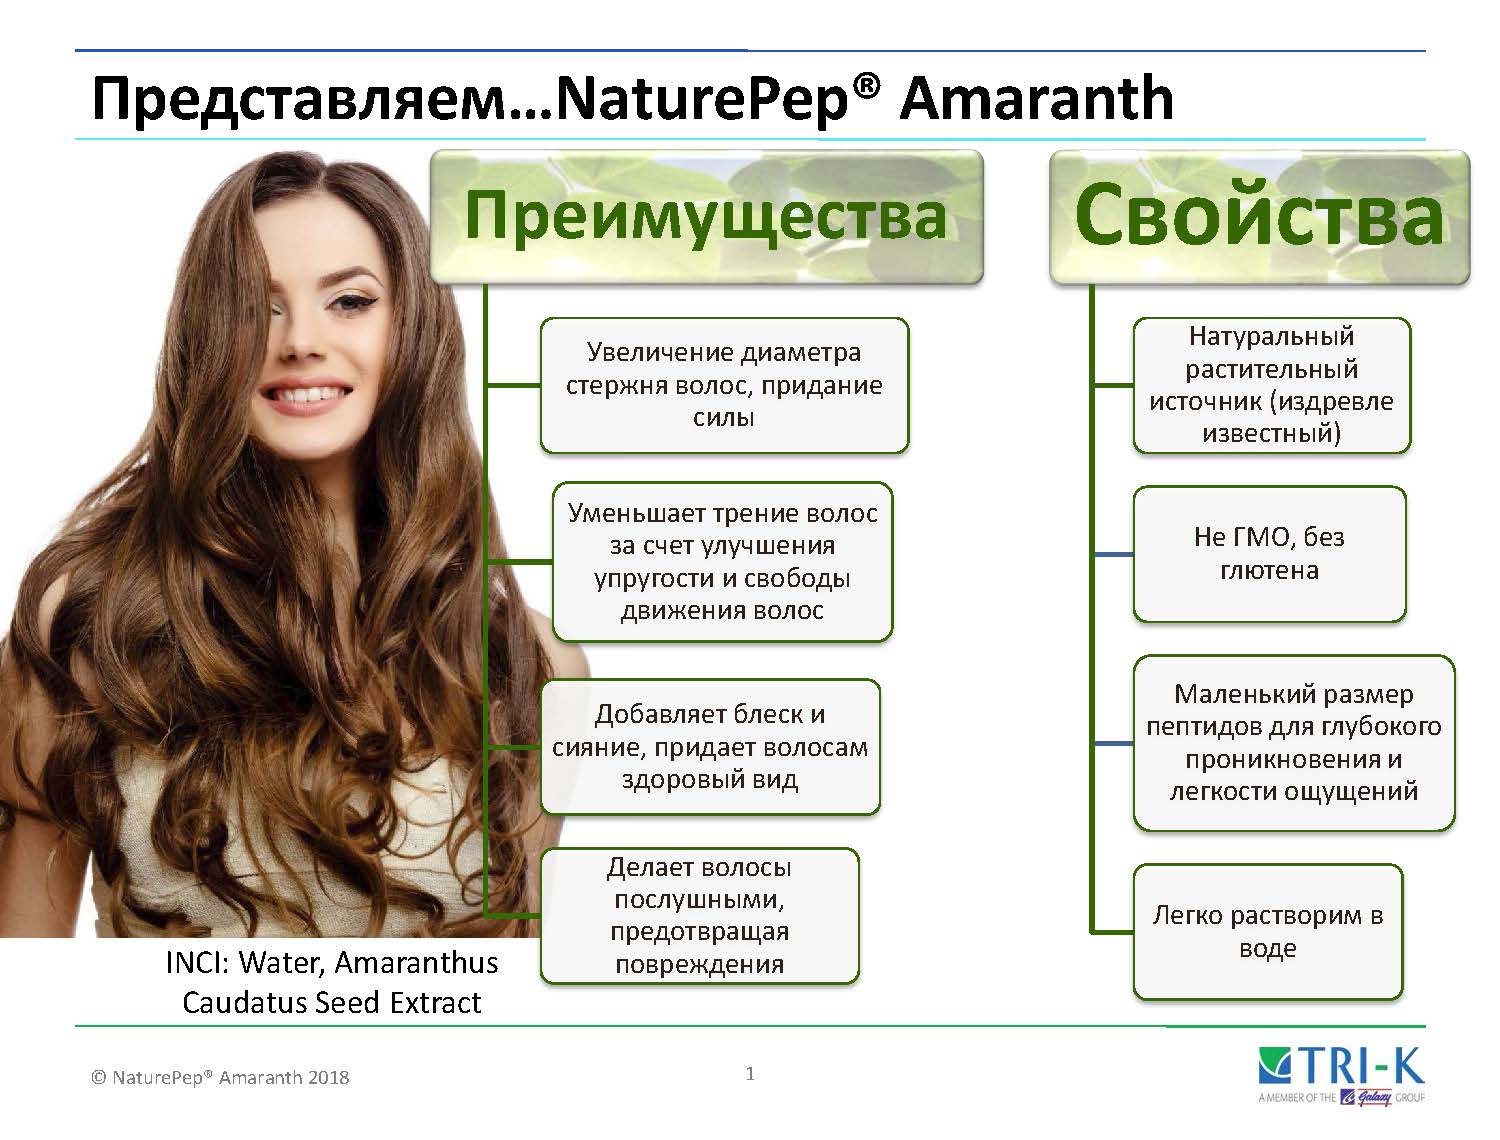 NaturePep® Amaranth